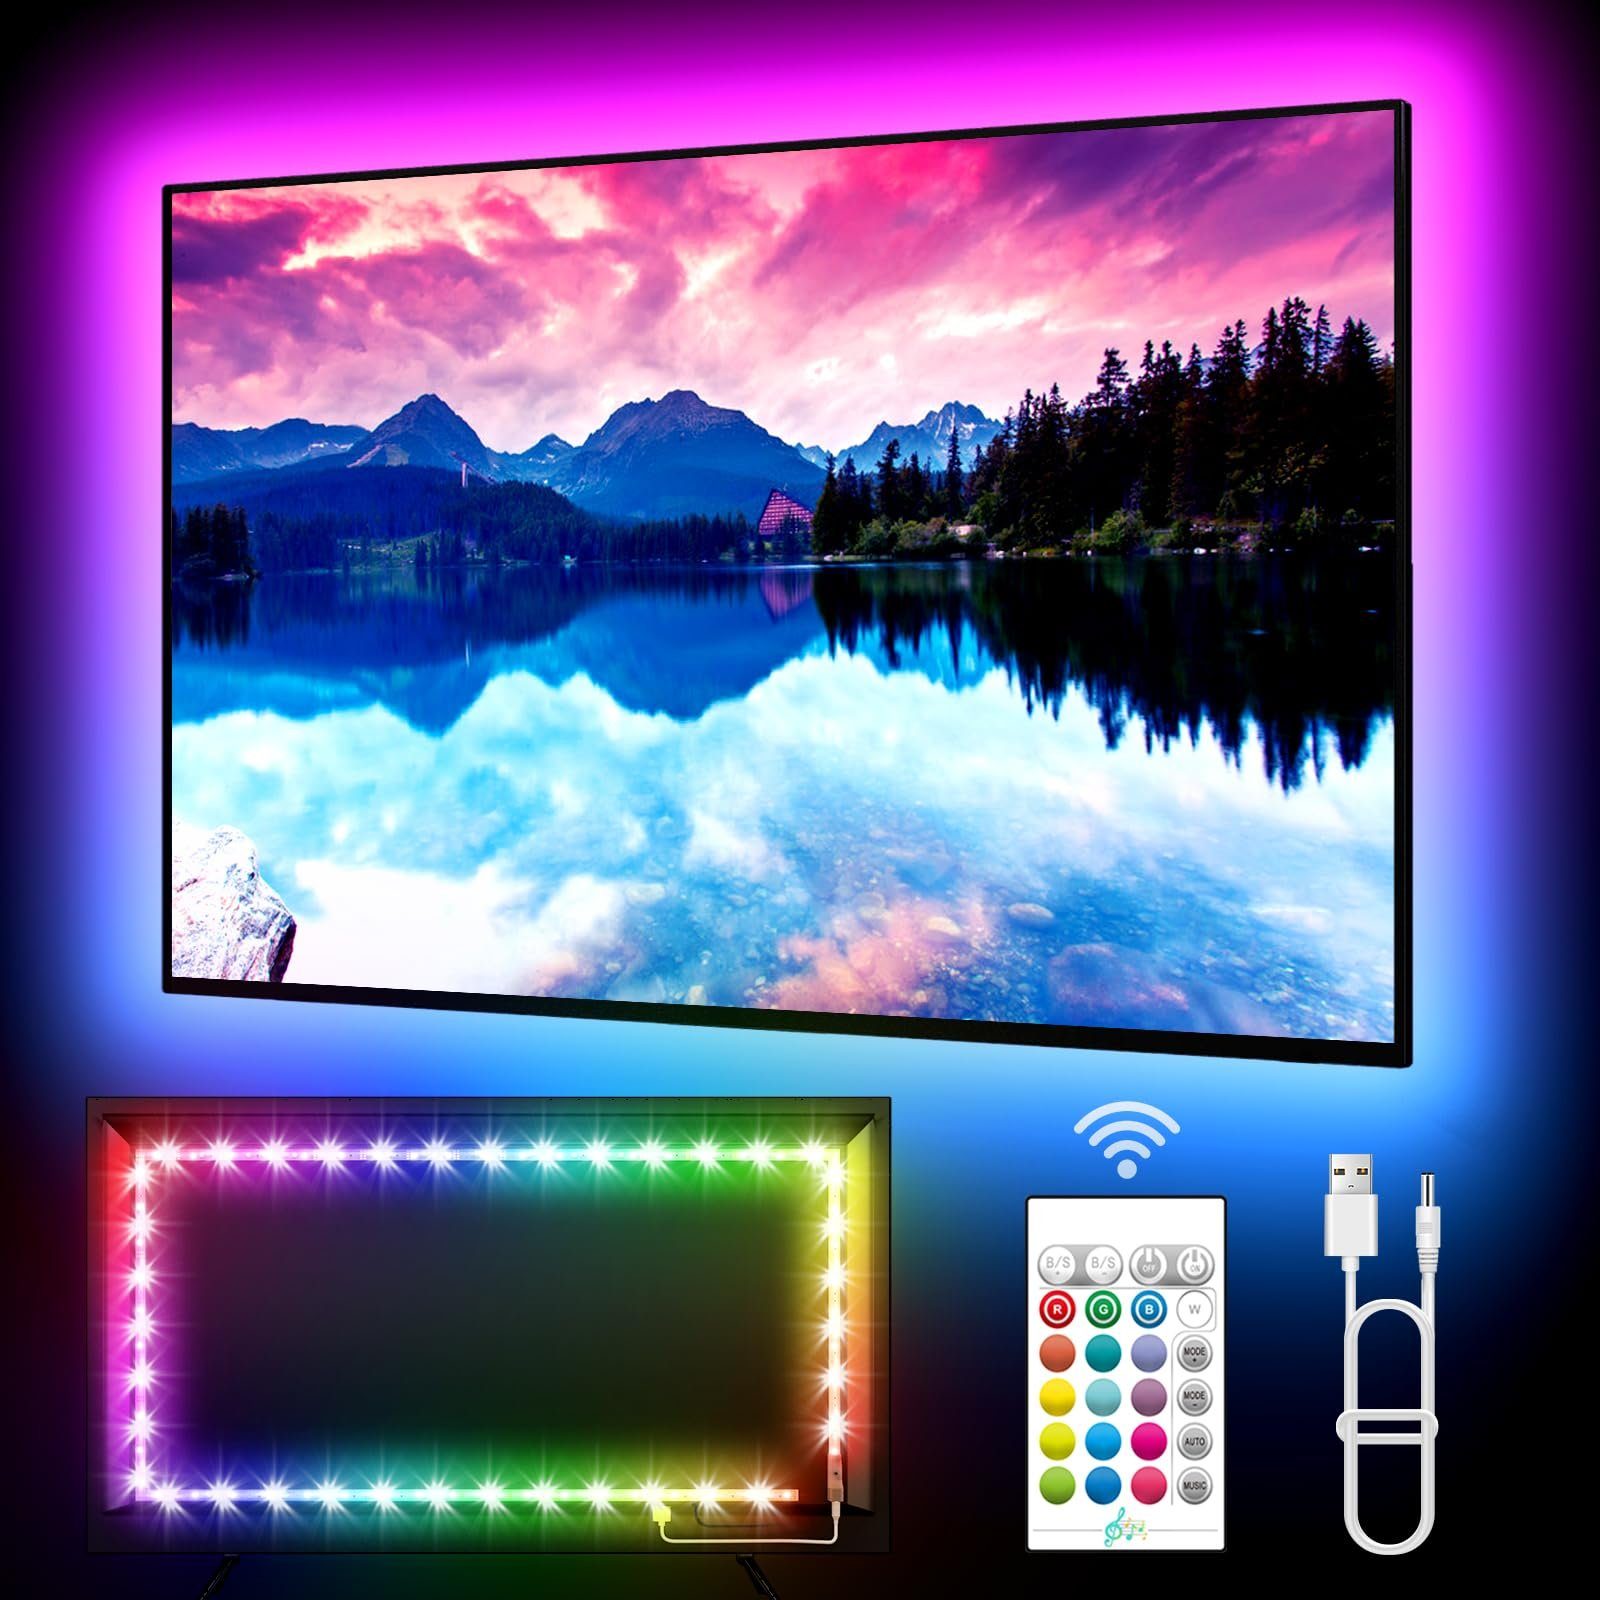 LED RGB, Backlight Musik USB, Fernsteuerung/APP-Kontrolle, Band, Stripe Streifen Lichtstripe, Sync, TV Sunicol LED Licht, 2M/5M Hintergrundbeleuchtung,